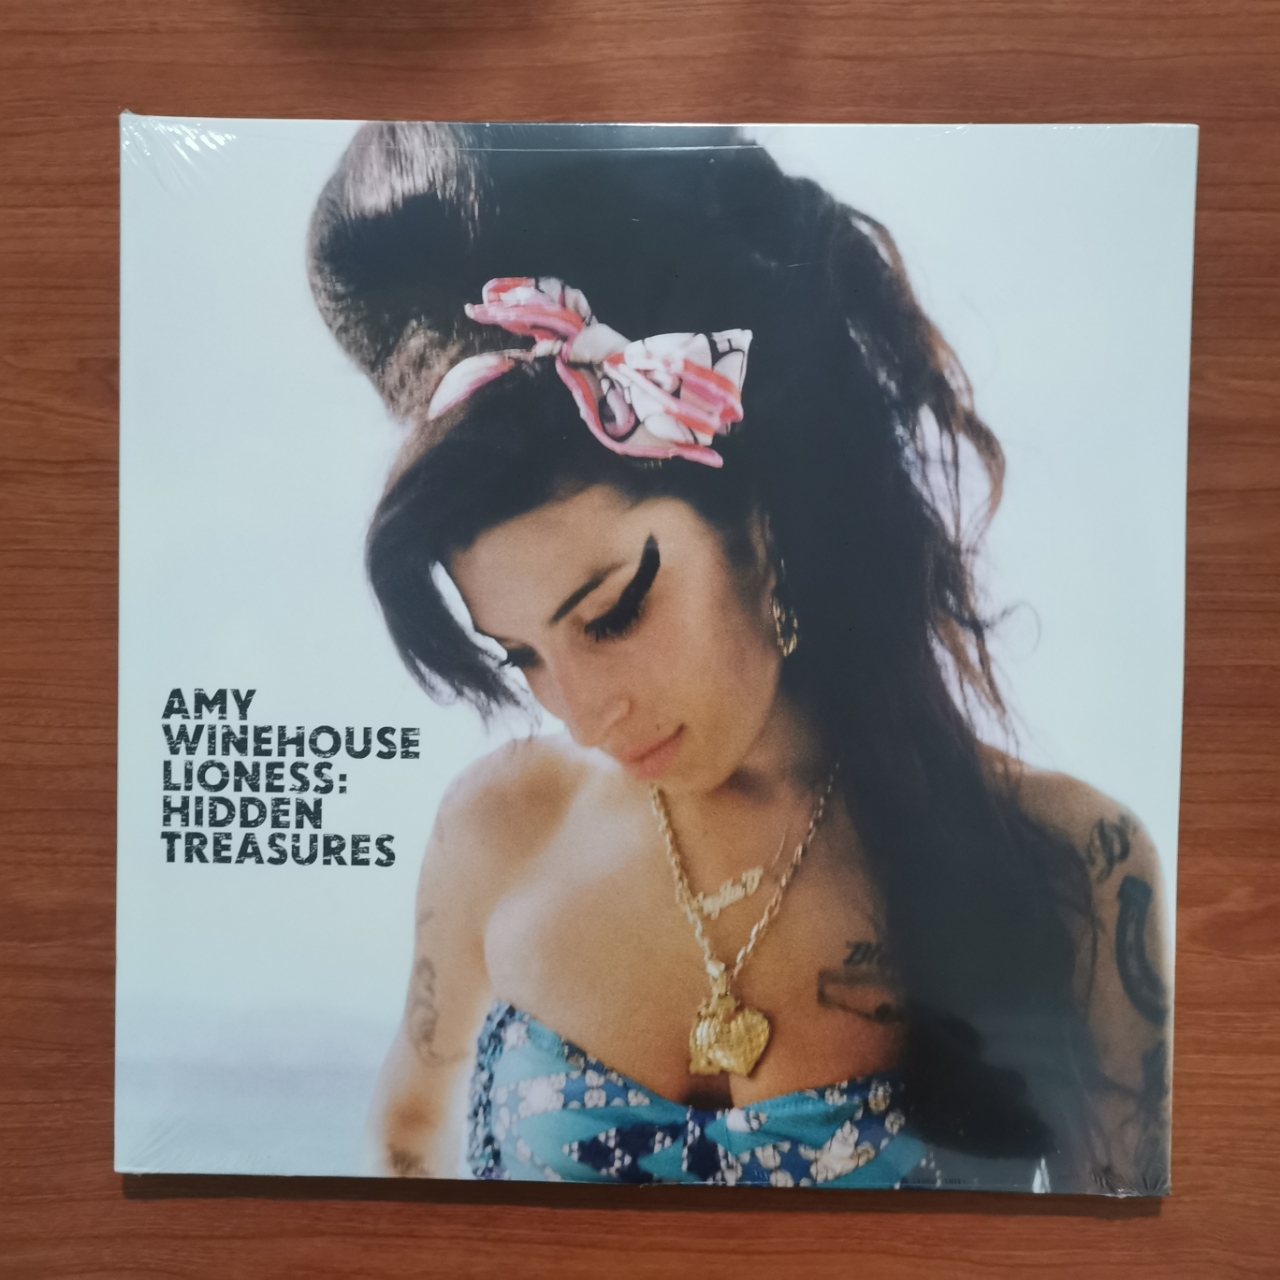 แผ่นเสียง Amy Winehouse อัลบั้ม  lioness:hidden​ treasures 2lp made in EU แผ่นเสียงใหม่ซีล